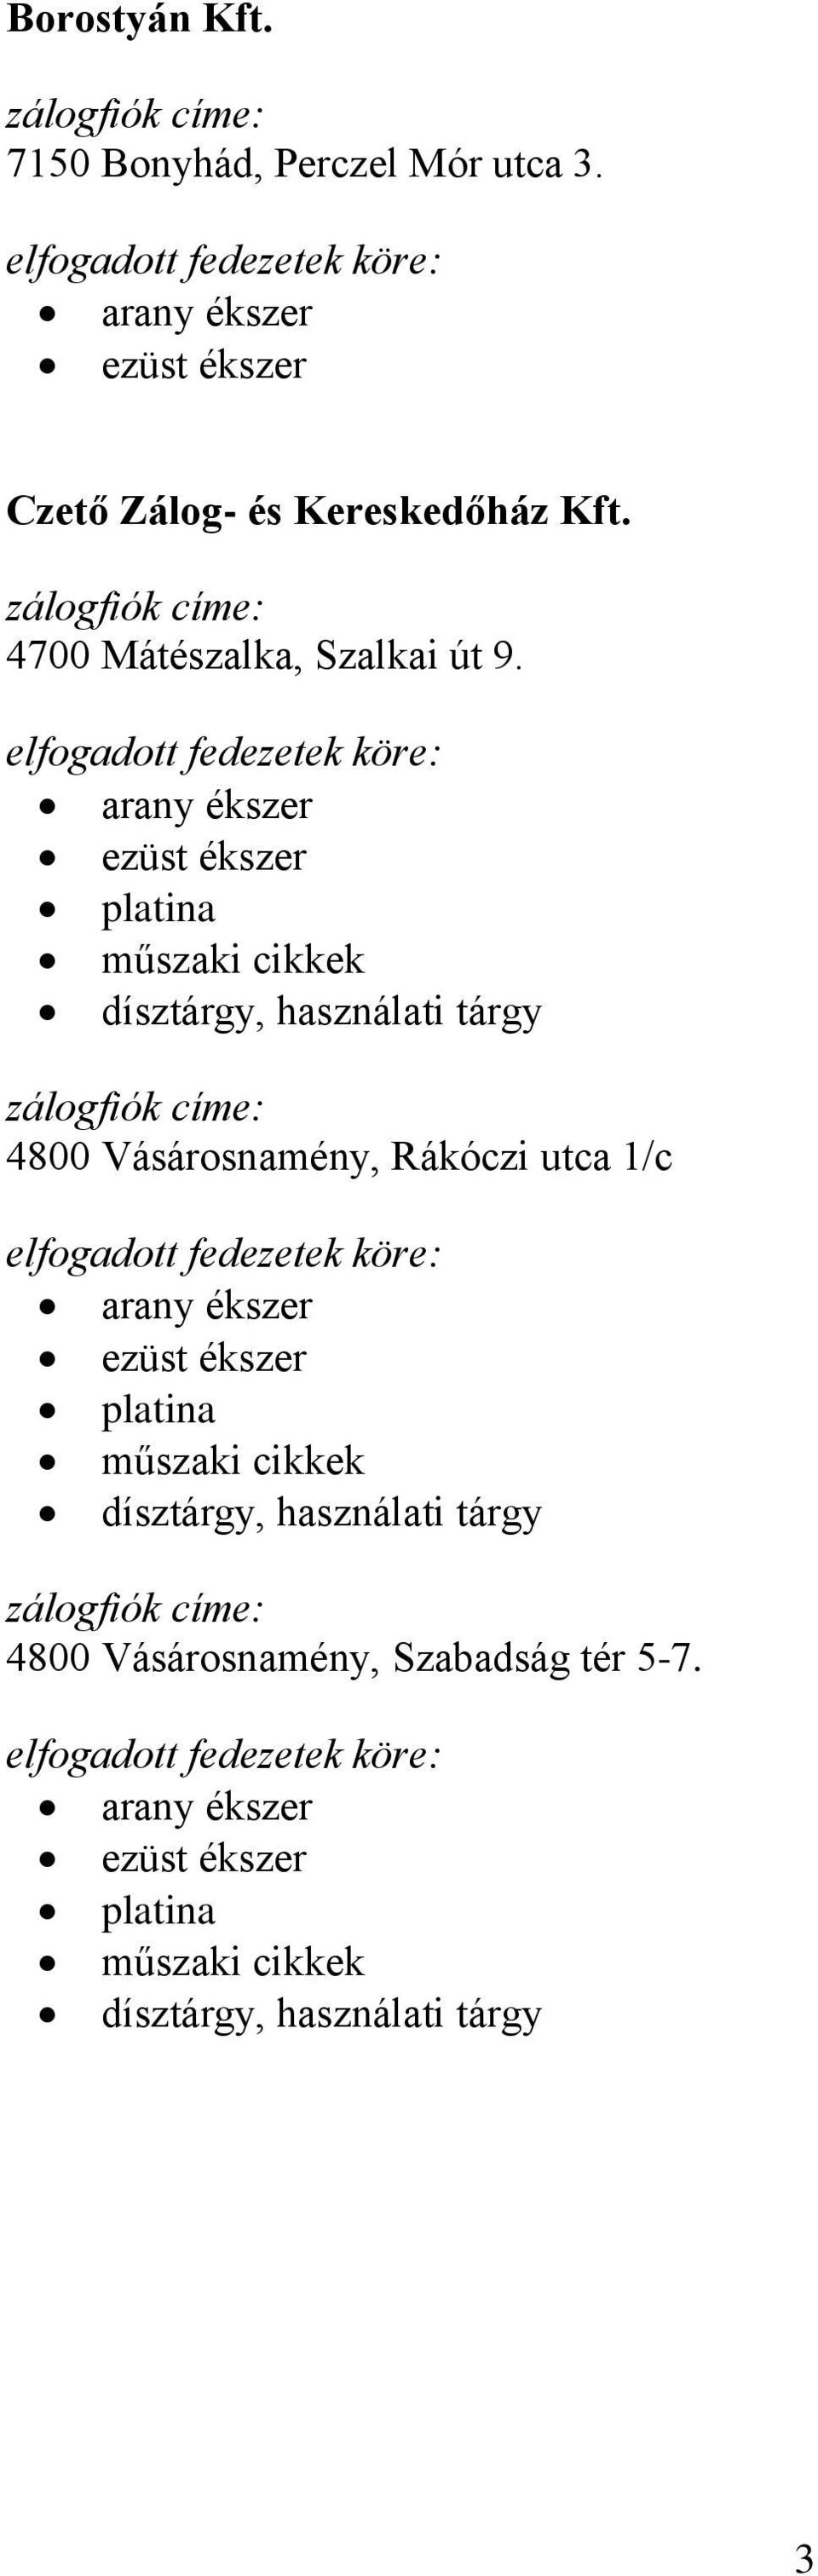 Adamas Kereskedelmi és Szolgáltató Kft. zálogfiók címe: 1191 Budapest,  Kossuth tér Üzletház I.4. sz. - PDF Free Download